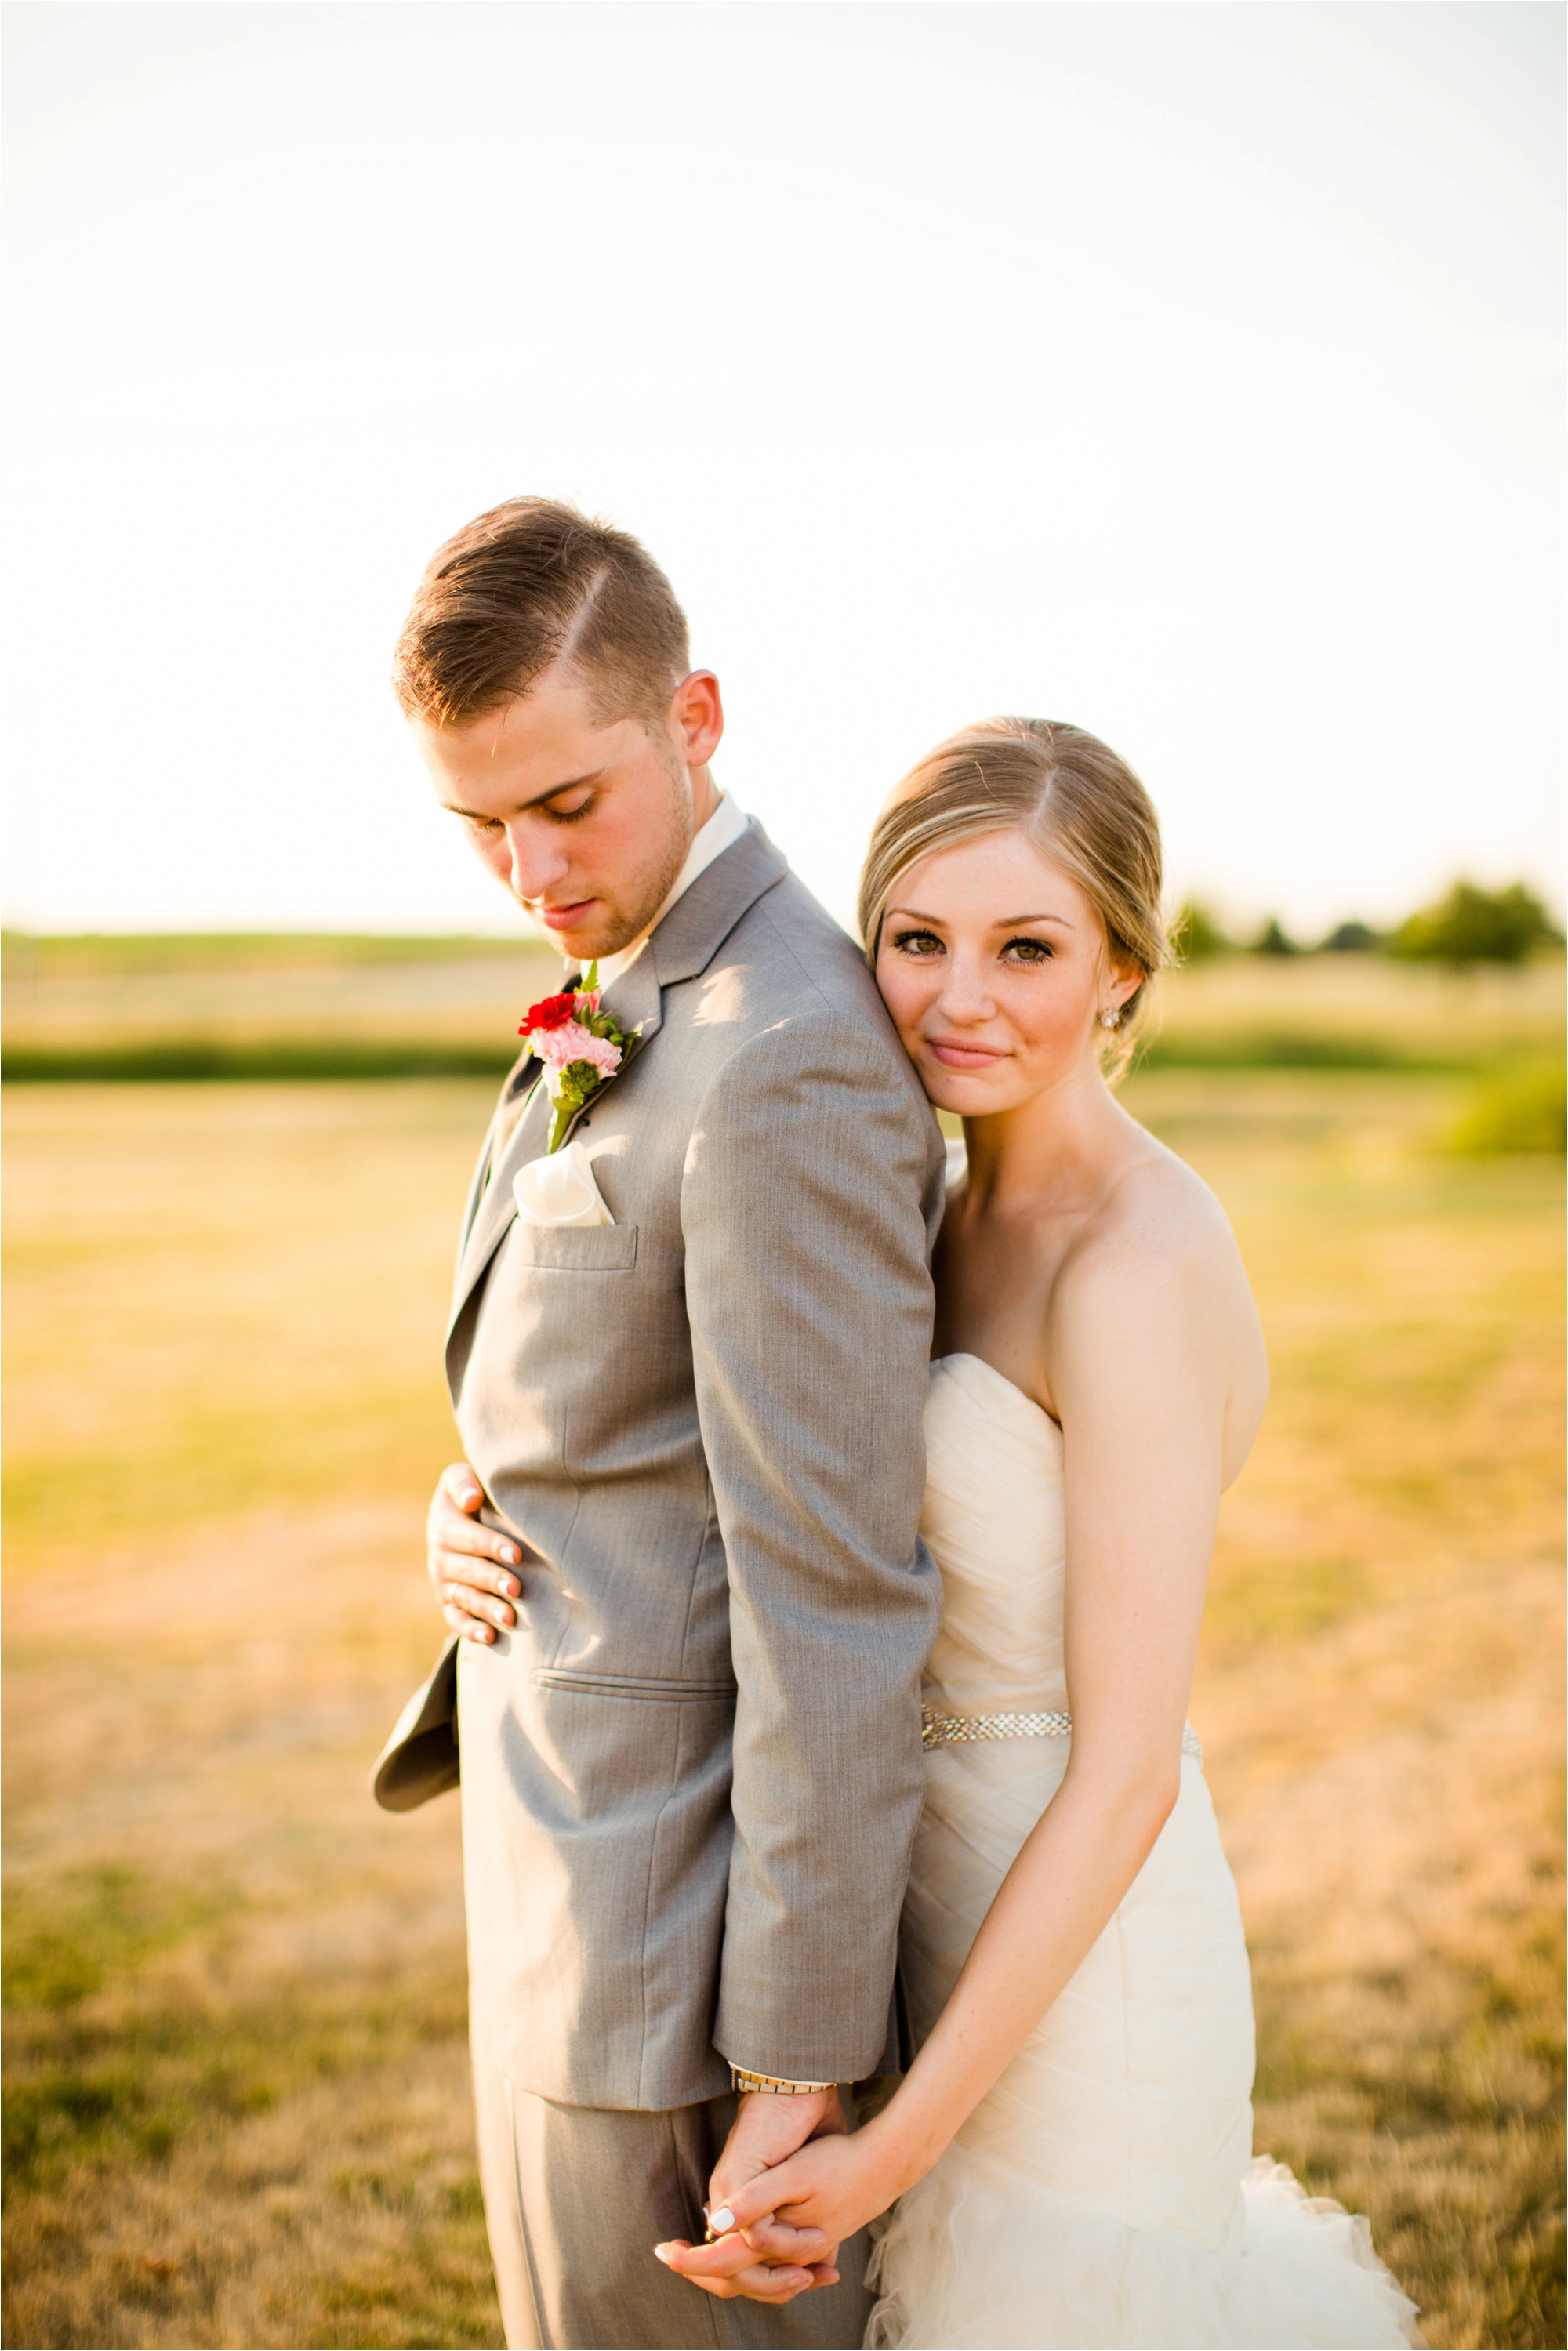 Caitlin and Luke Photography, Bloomington Normal Wedding Photographers, Illinois Wedding Photographers, Illinois Husband and Wife Wedding Photography Team_0353.jpg